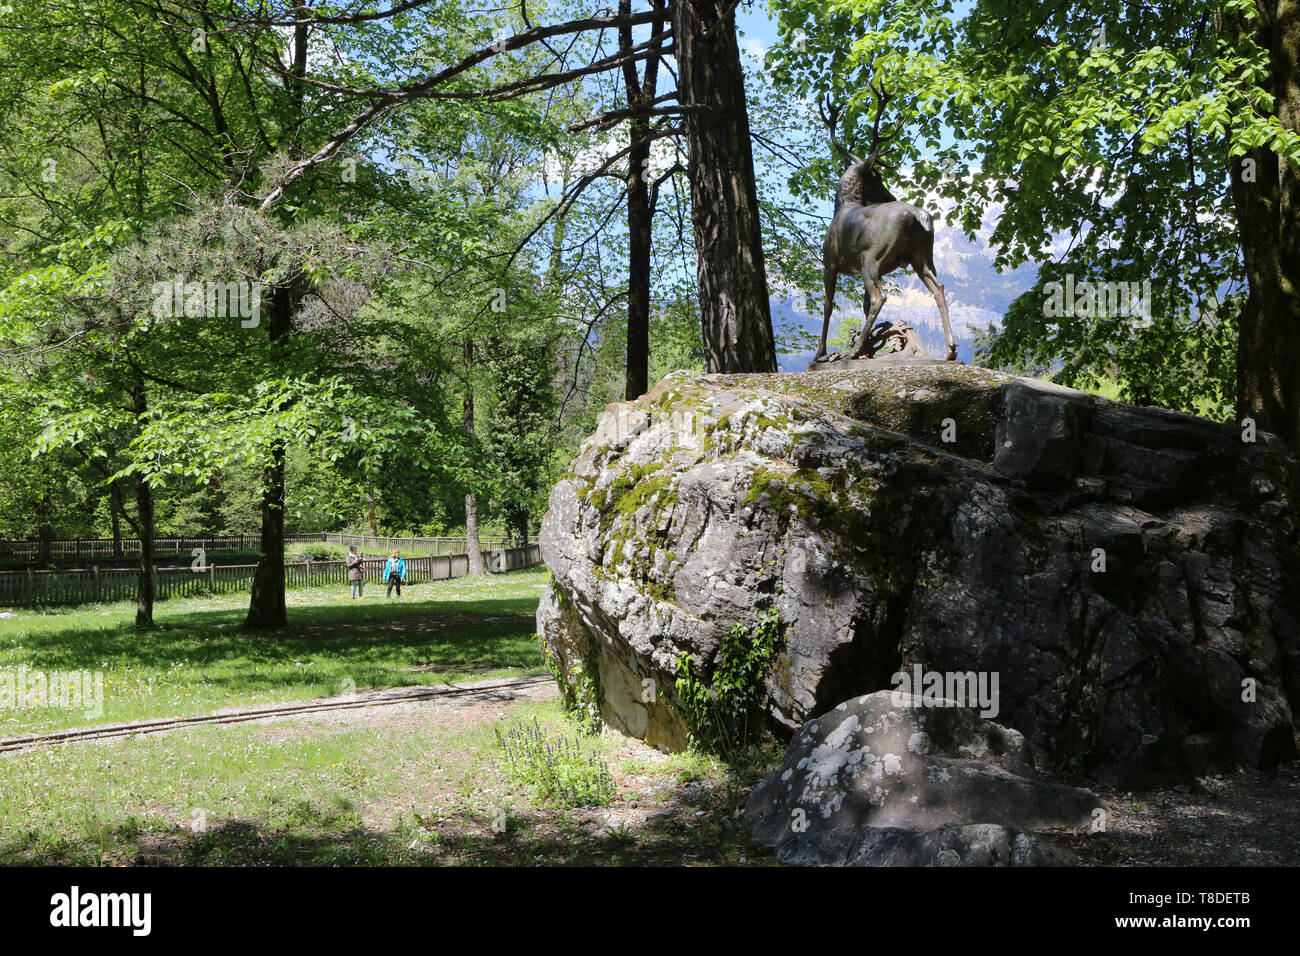 Cerf d'Europa. Statua par Pierre Louis Rouillard. 1875. Fonte de fer. Parc thermal de Saint-Gervais-les-Bains/Le Fayet. Foto Stock